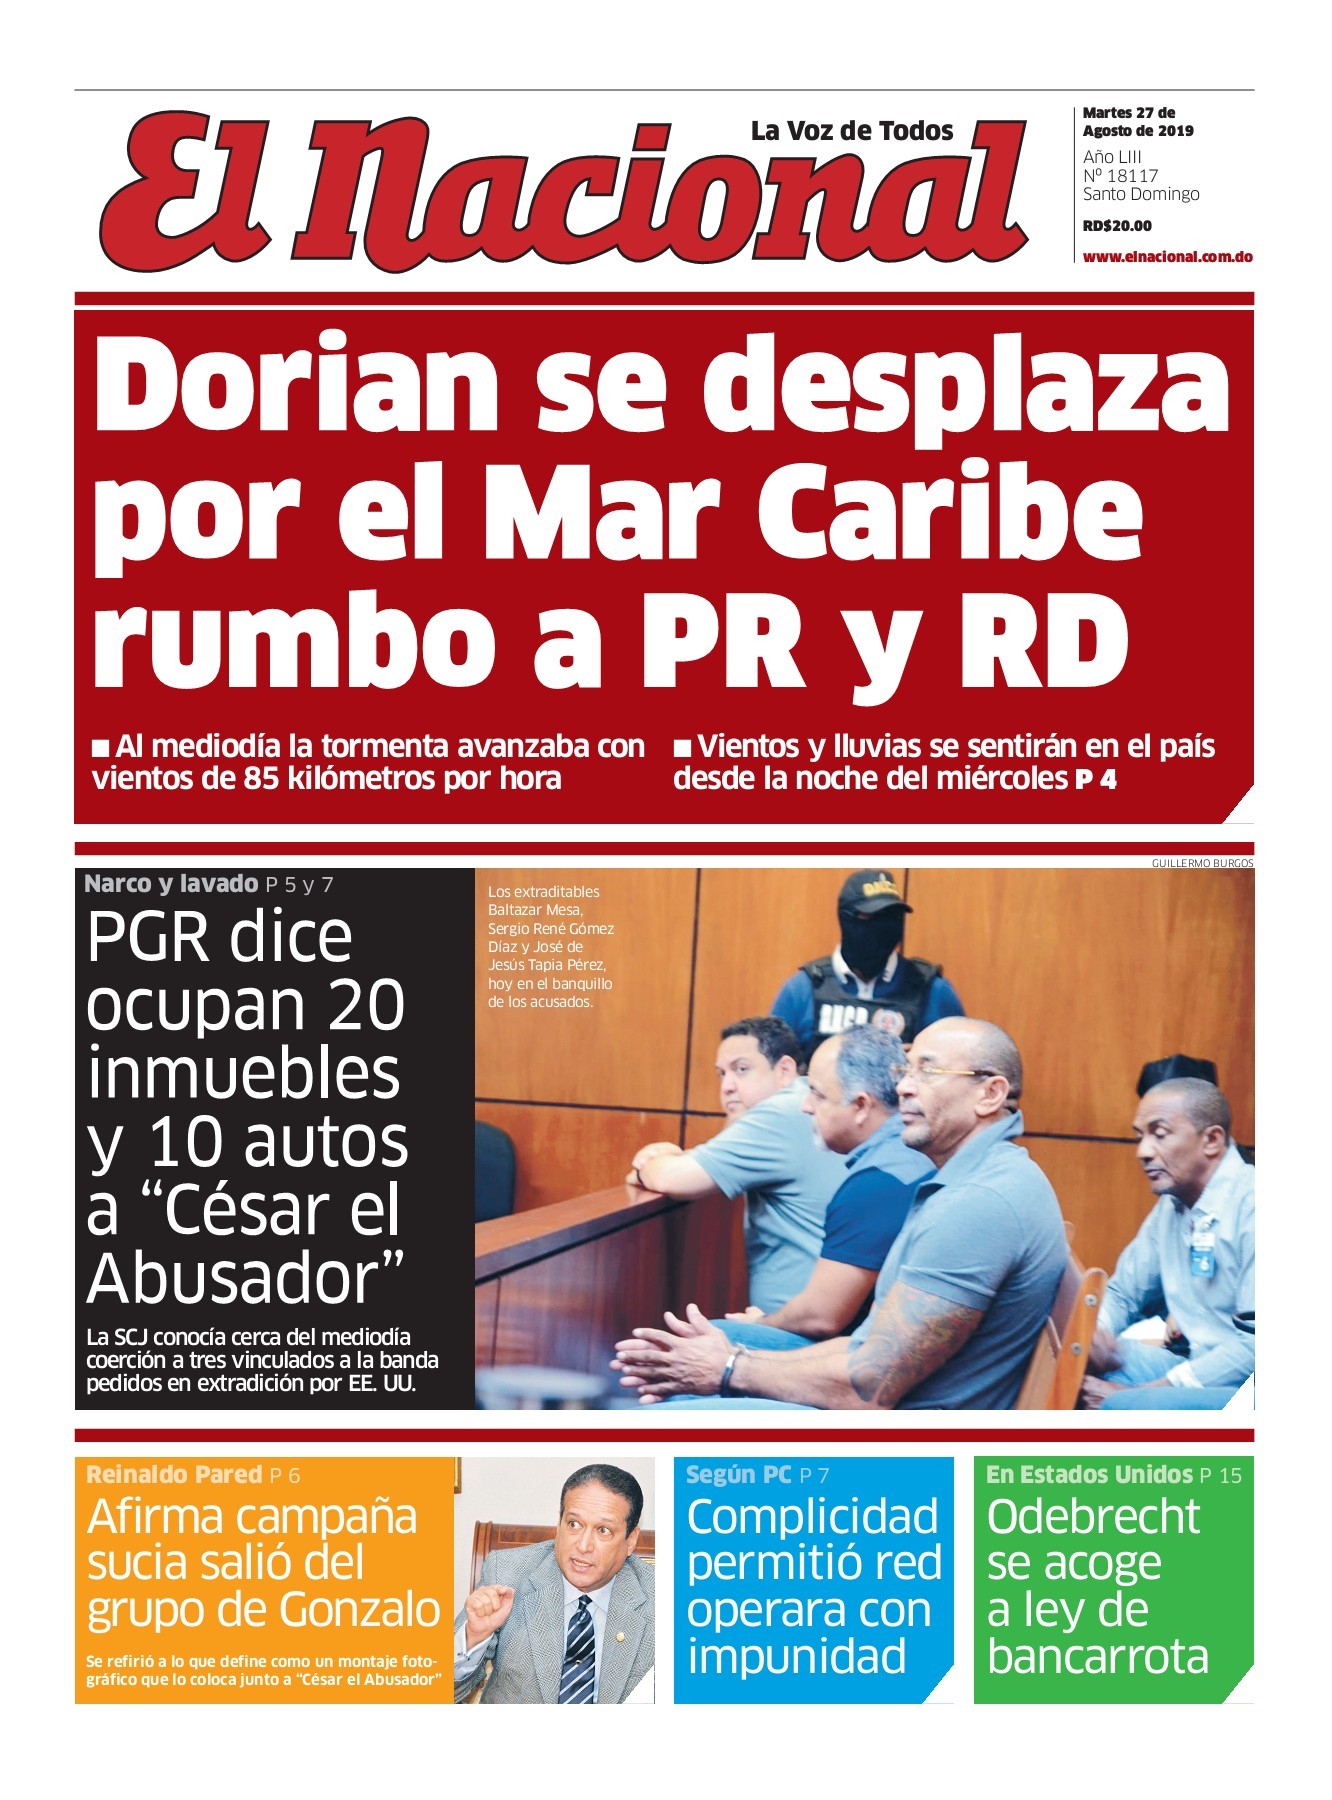 Portada Periódico El Nacional, Martes 27 de Agosto, 2019